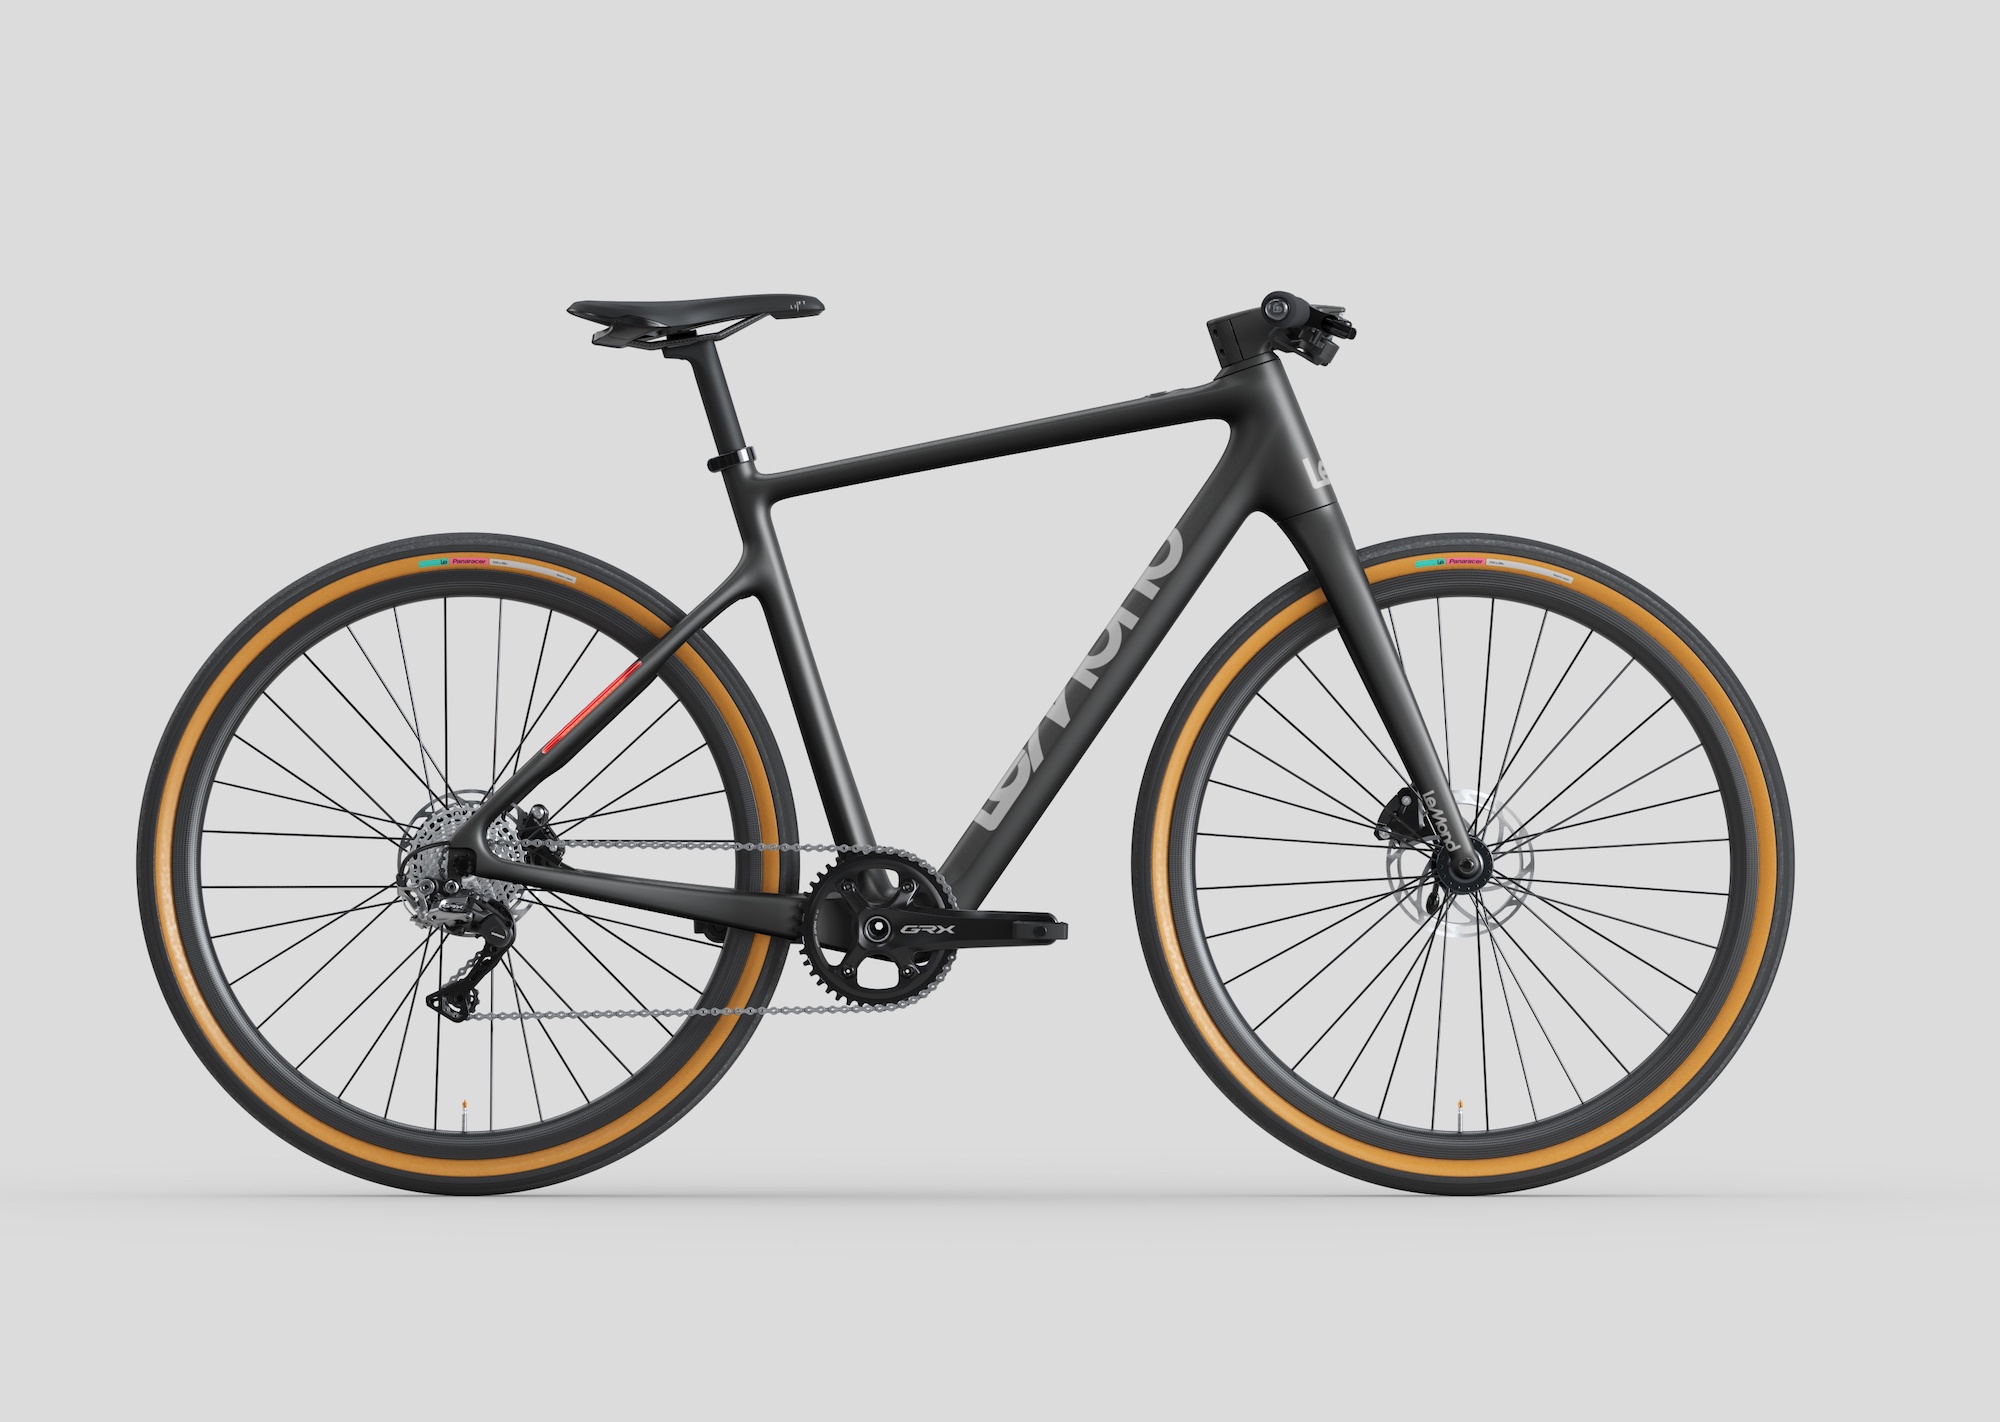 Tour de France Champion Greg LeMond Launches New Carbon Fiber eBikes